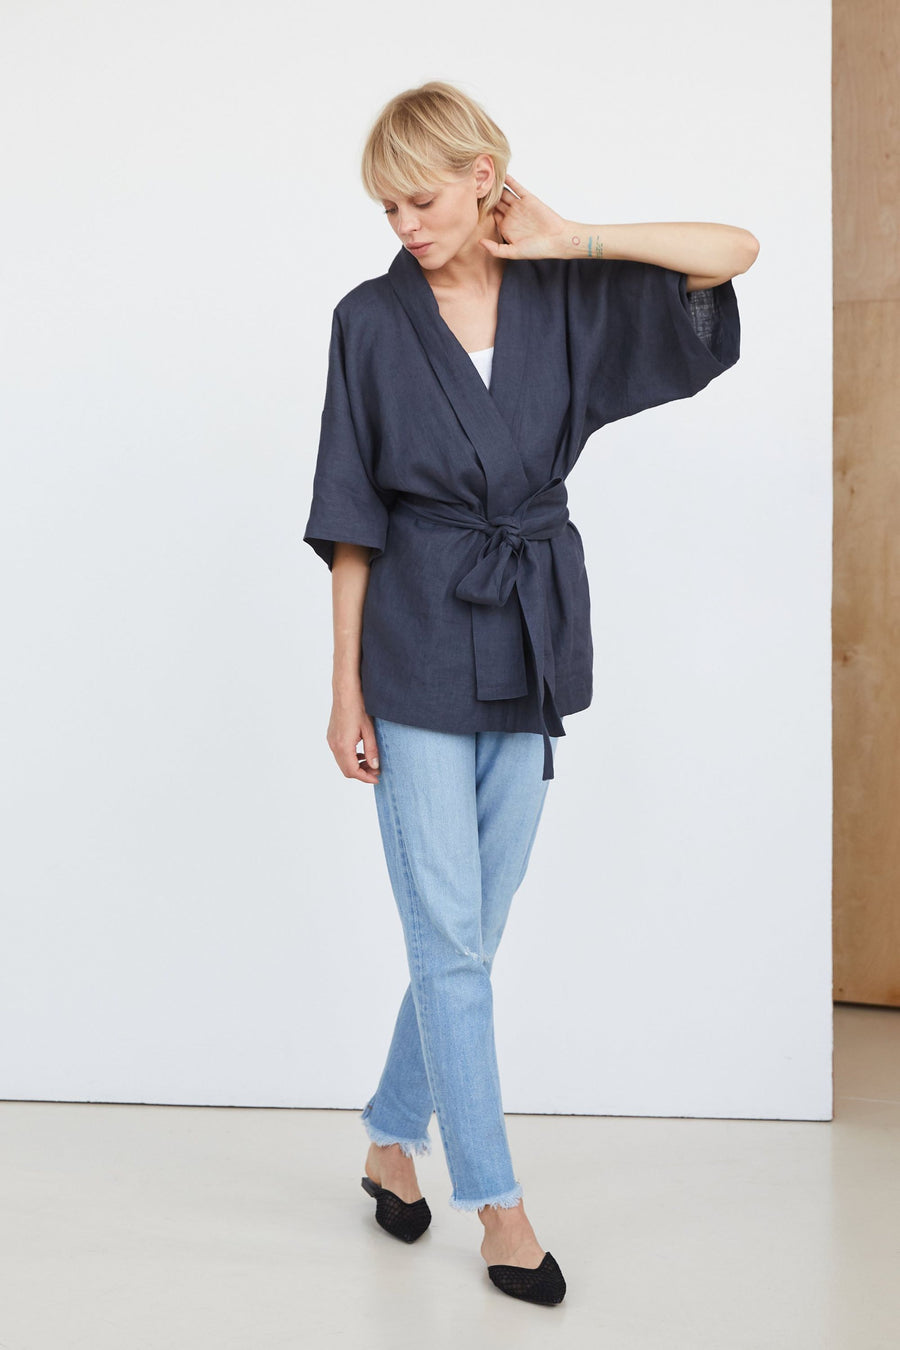 Coal Gray Linen Kimono Jacket